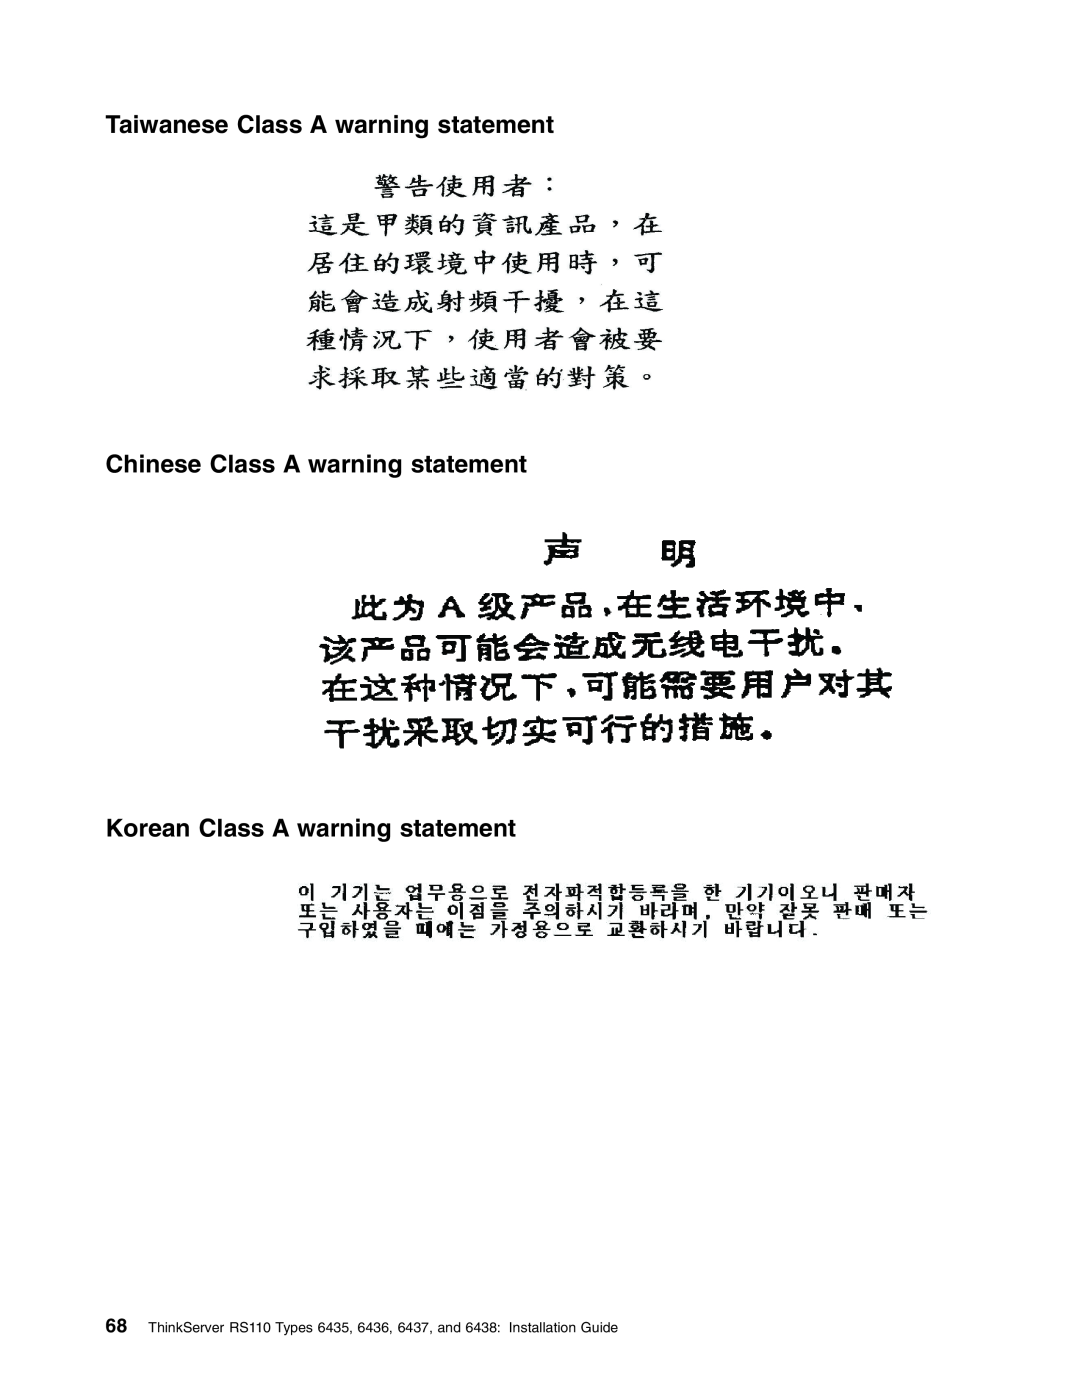 Lenovo 6436, 6438 Taiwanese Class A warning statement, Chinese Class A warning statement, Korean Class A warning statement 